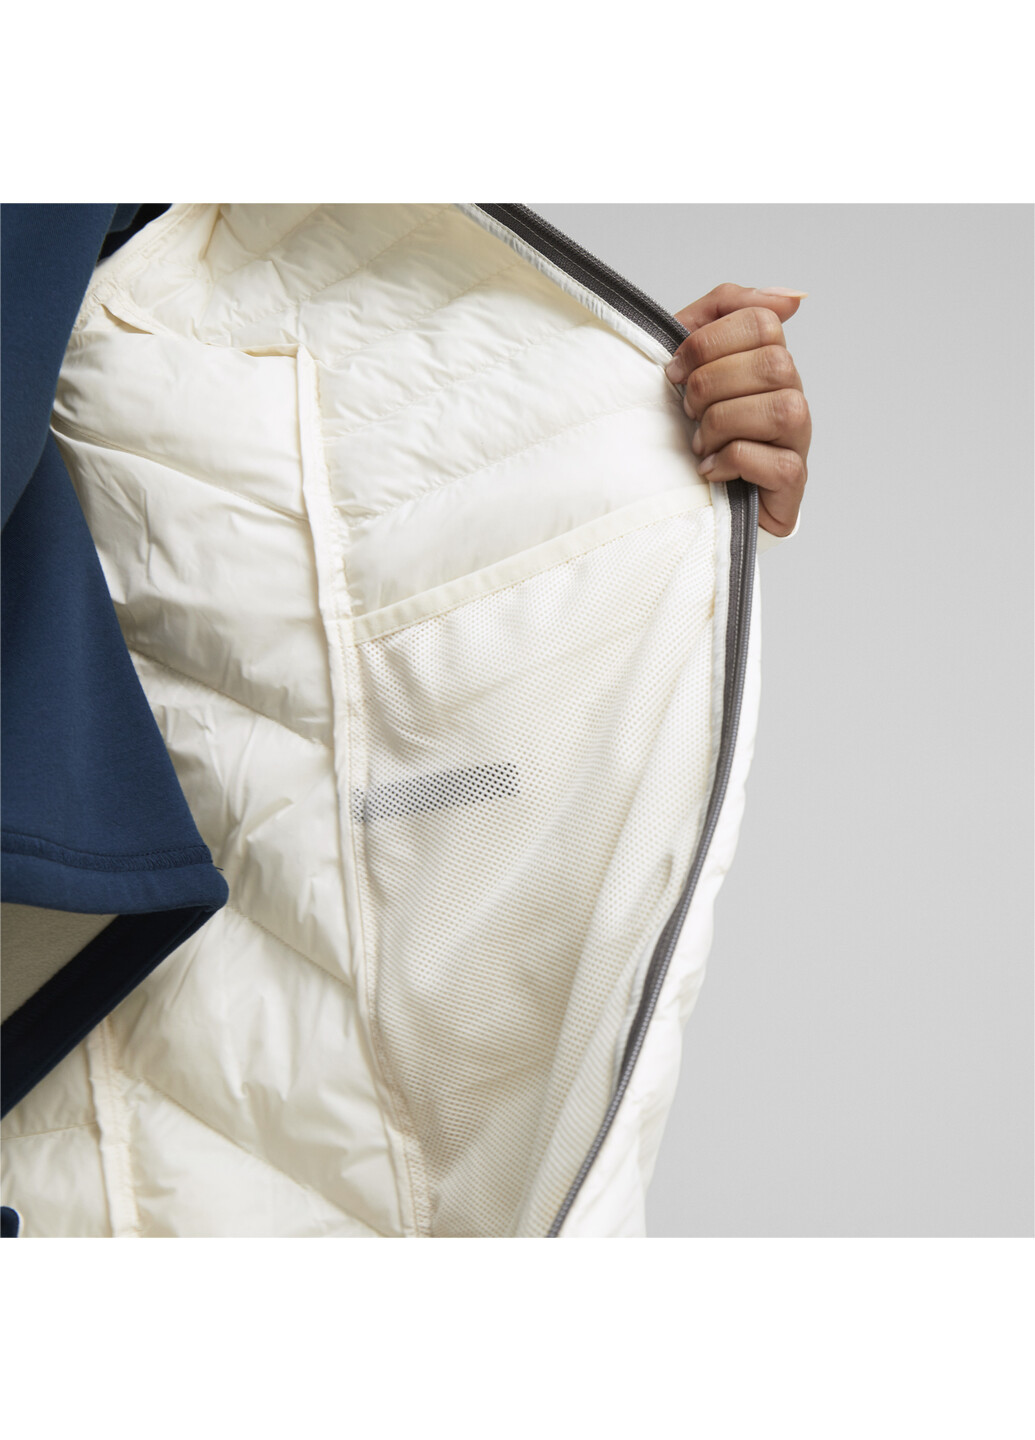 Куртка PackLITE Jacket Women Puma однотонный белый спортивный нейлон, полиэстер